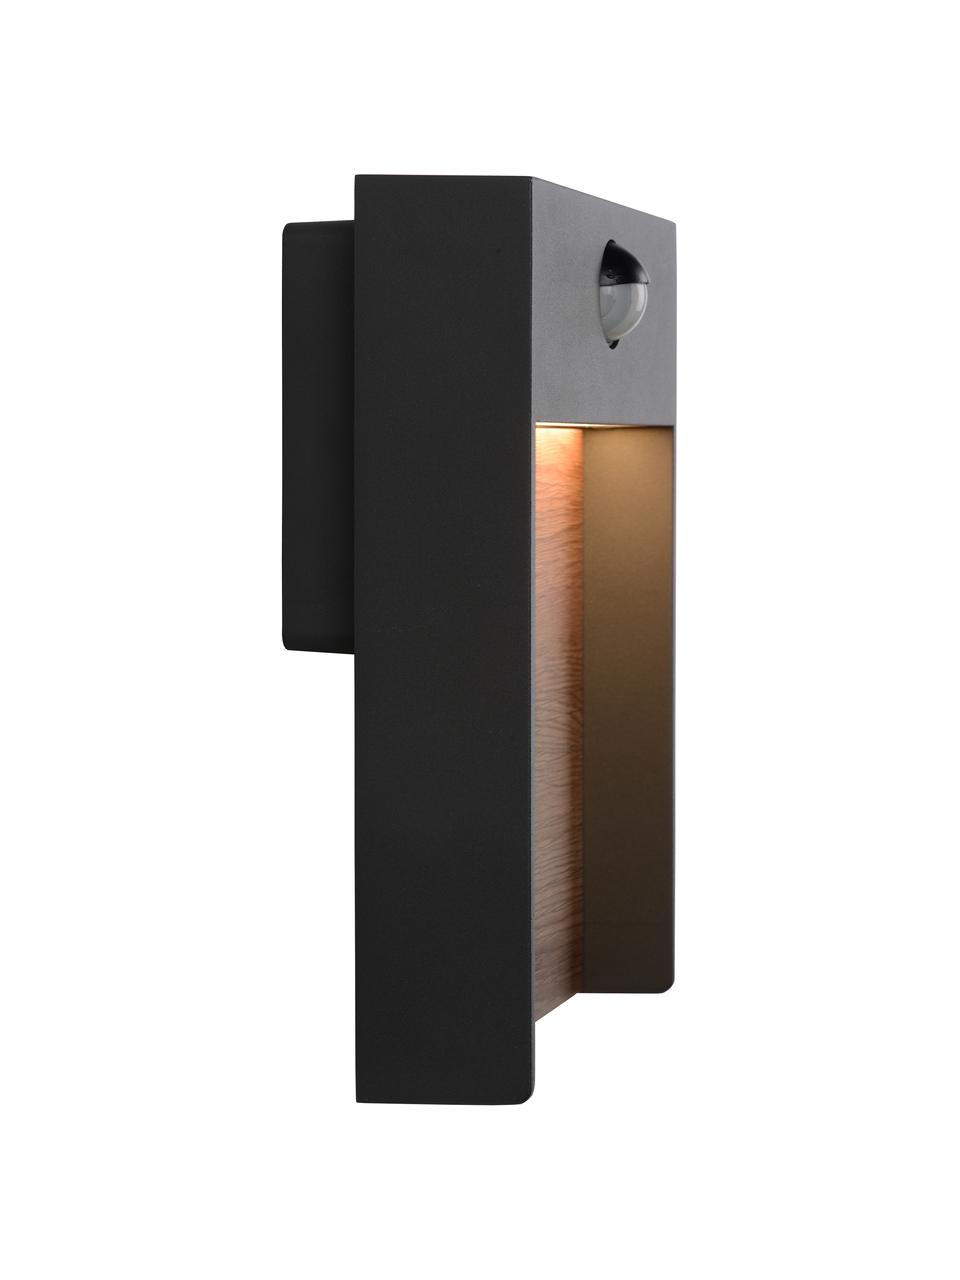 LED-Außenwandleuchte Jellum mit Bewegungsmelder, Dekor: Holz, Anthrazit, Dunkles Holz, B 18 x H 23 cm